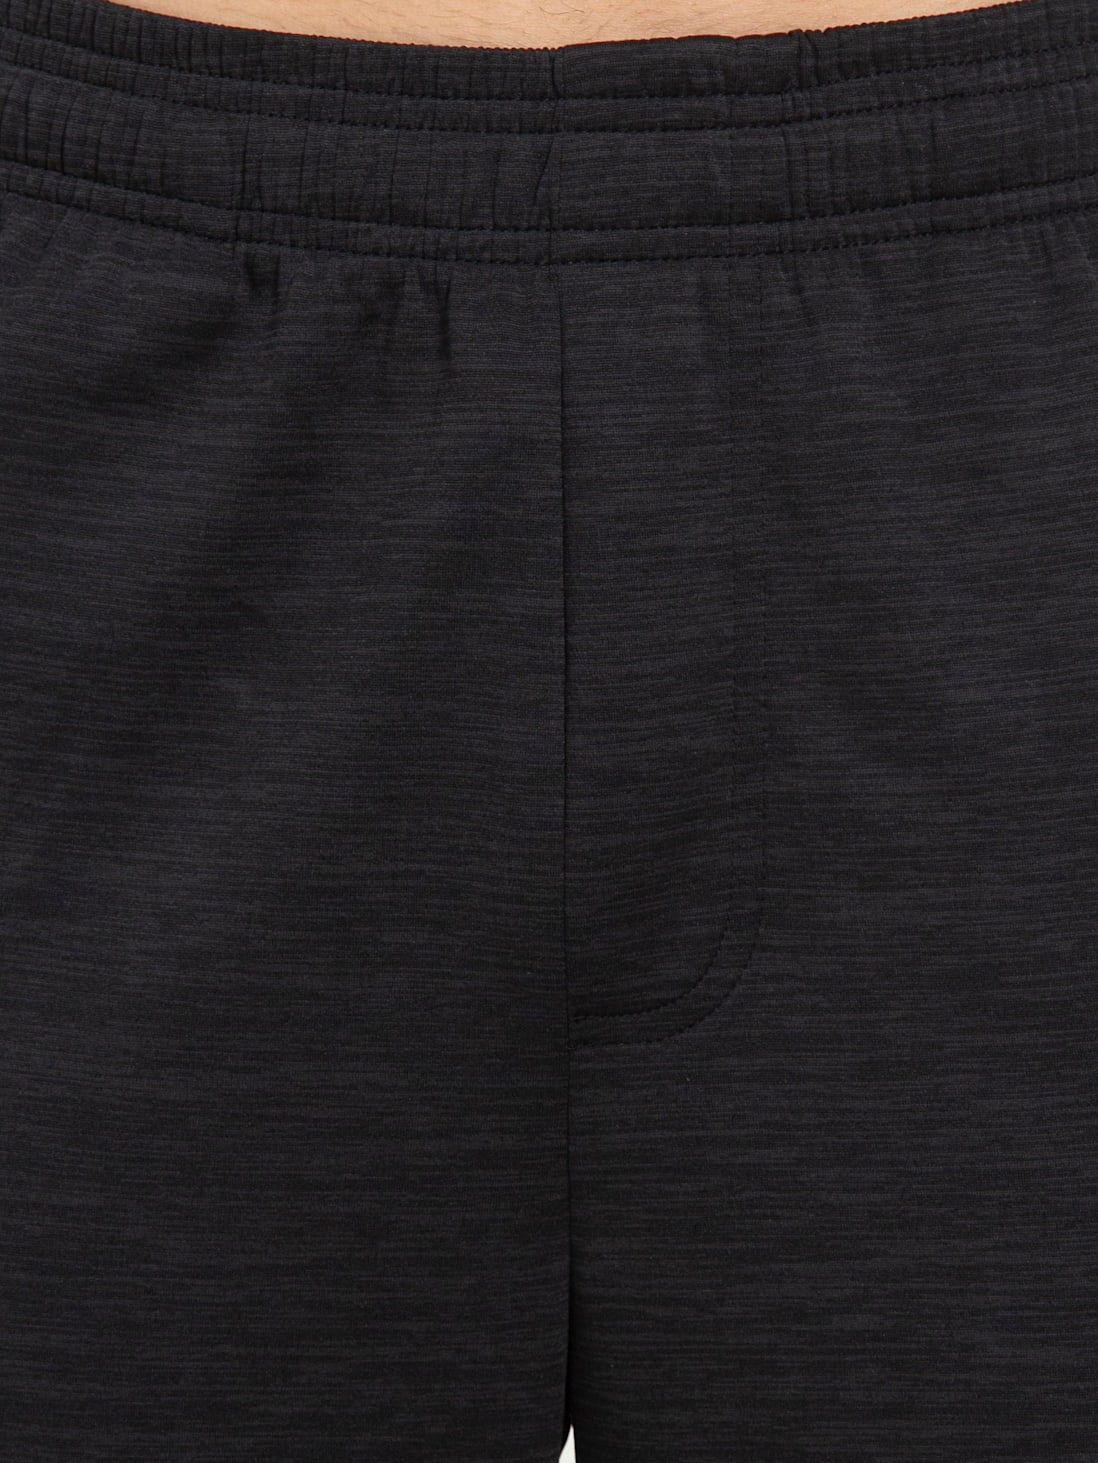 Buy Men's Lightweight Microfiber Slim Fit Trackpants with Zipper ...